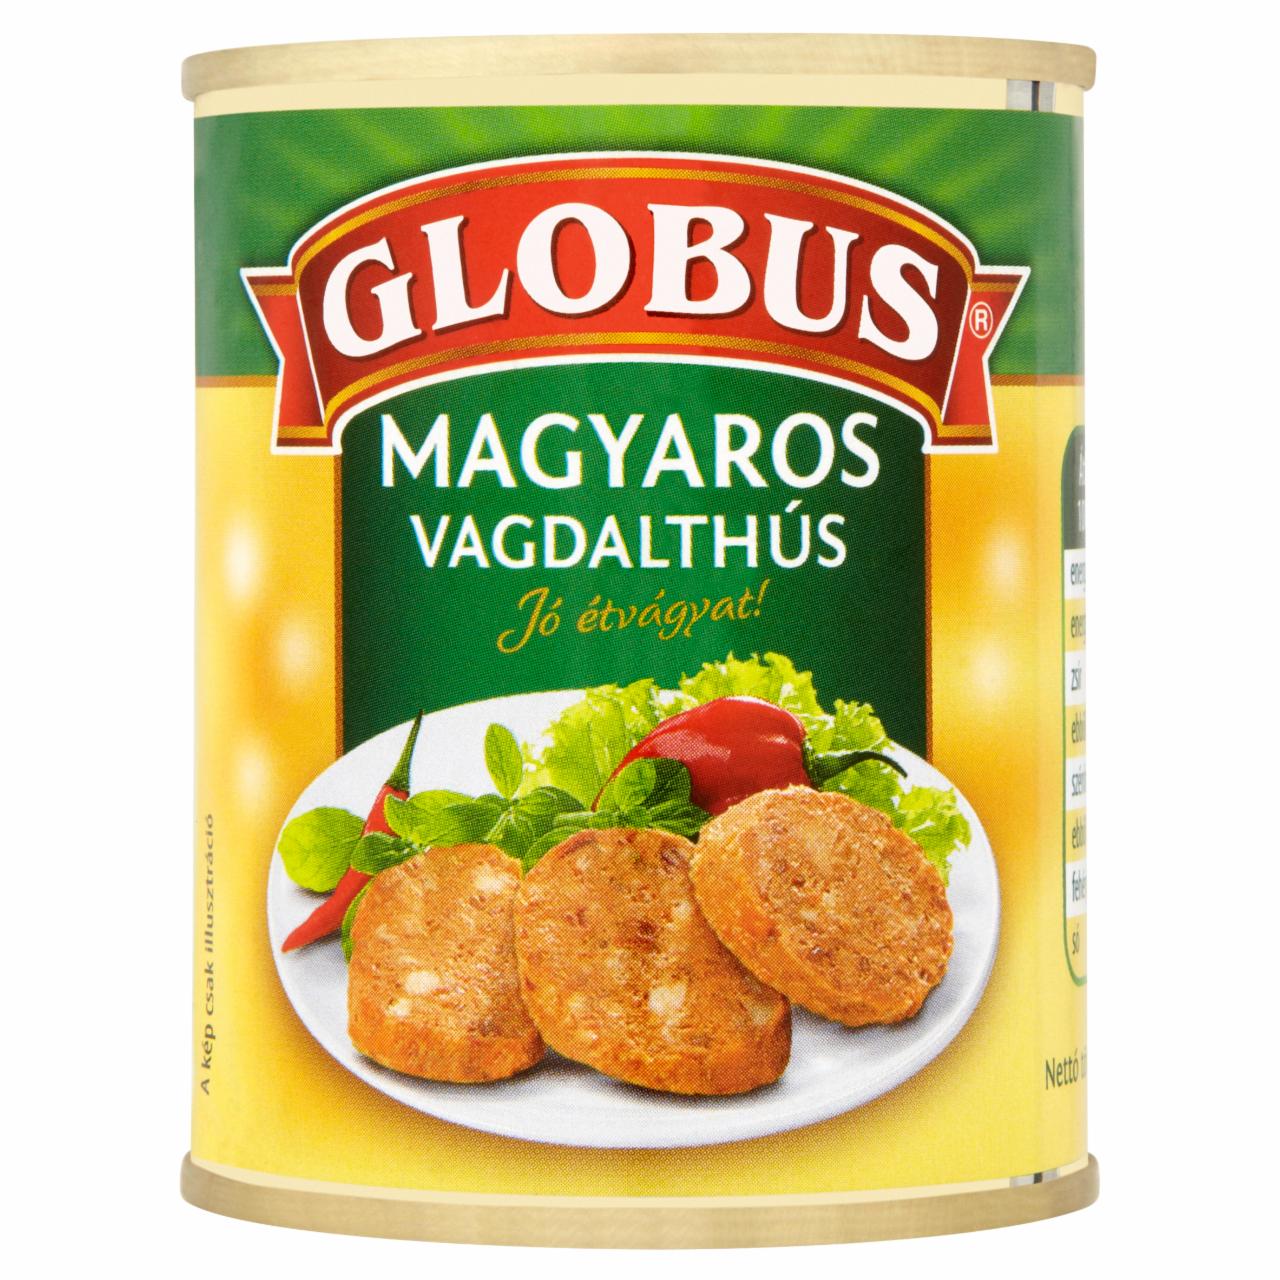 Képek - Globus magyaros vagdalthús 130 g